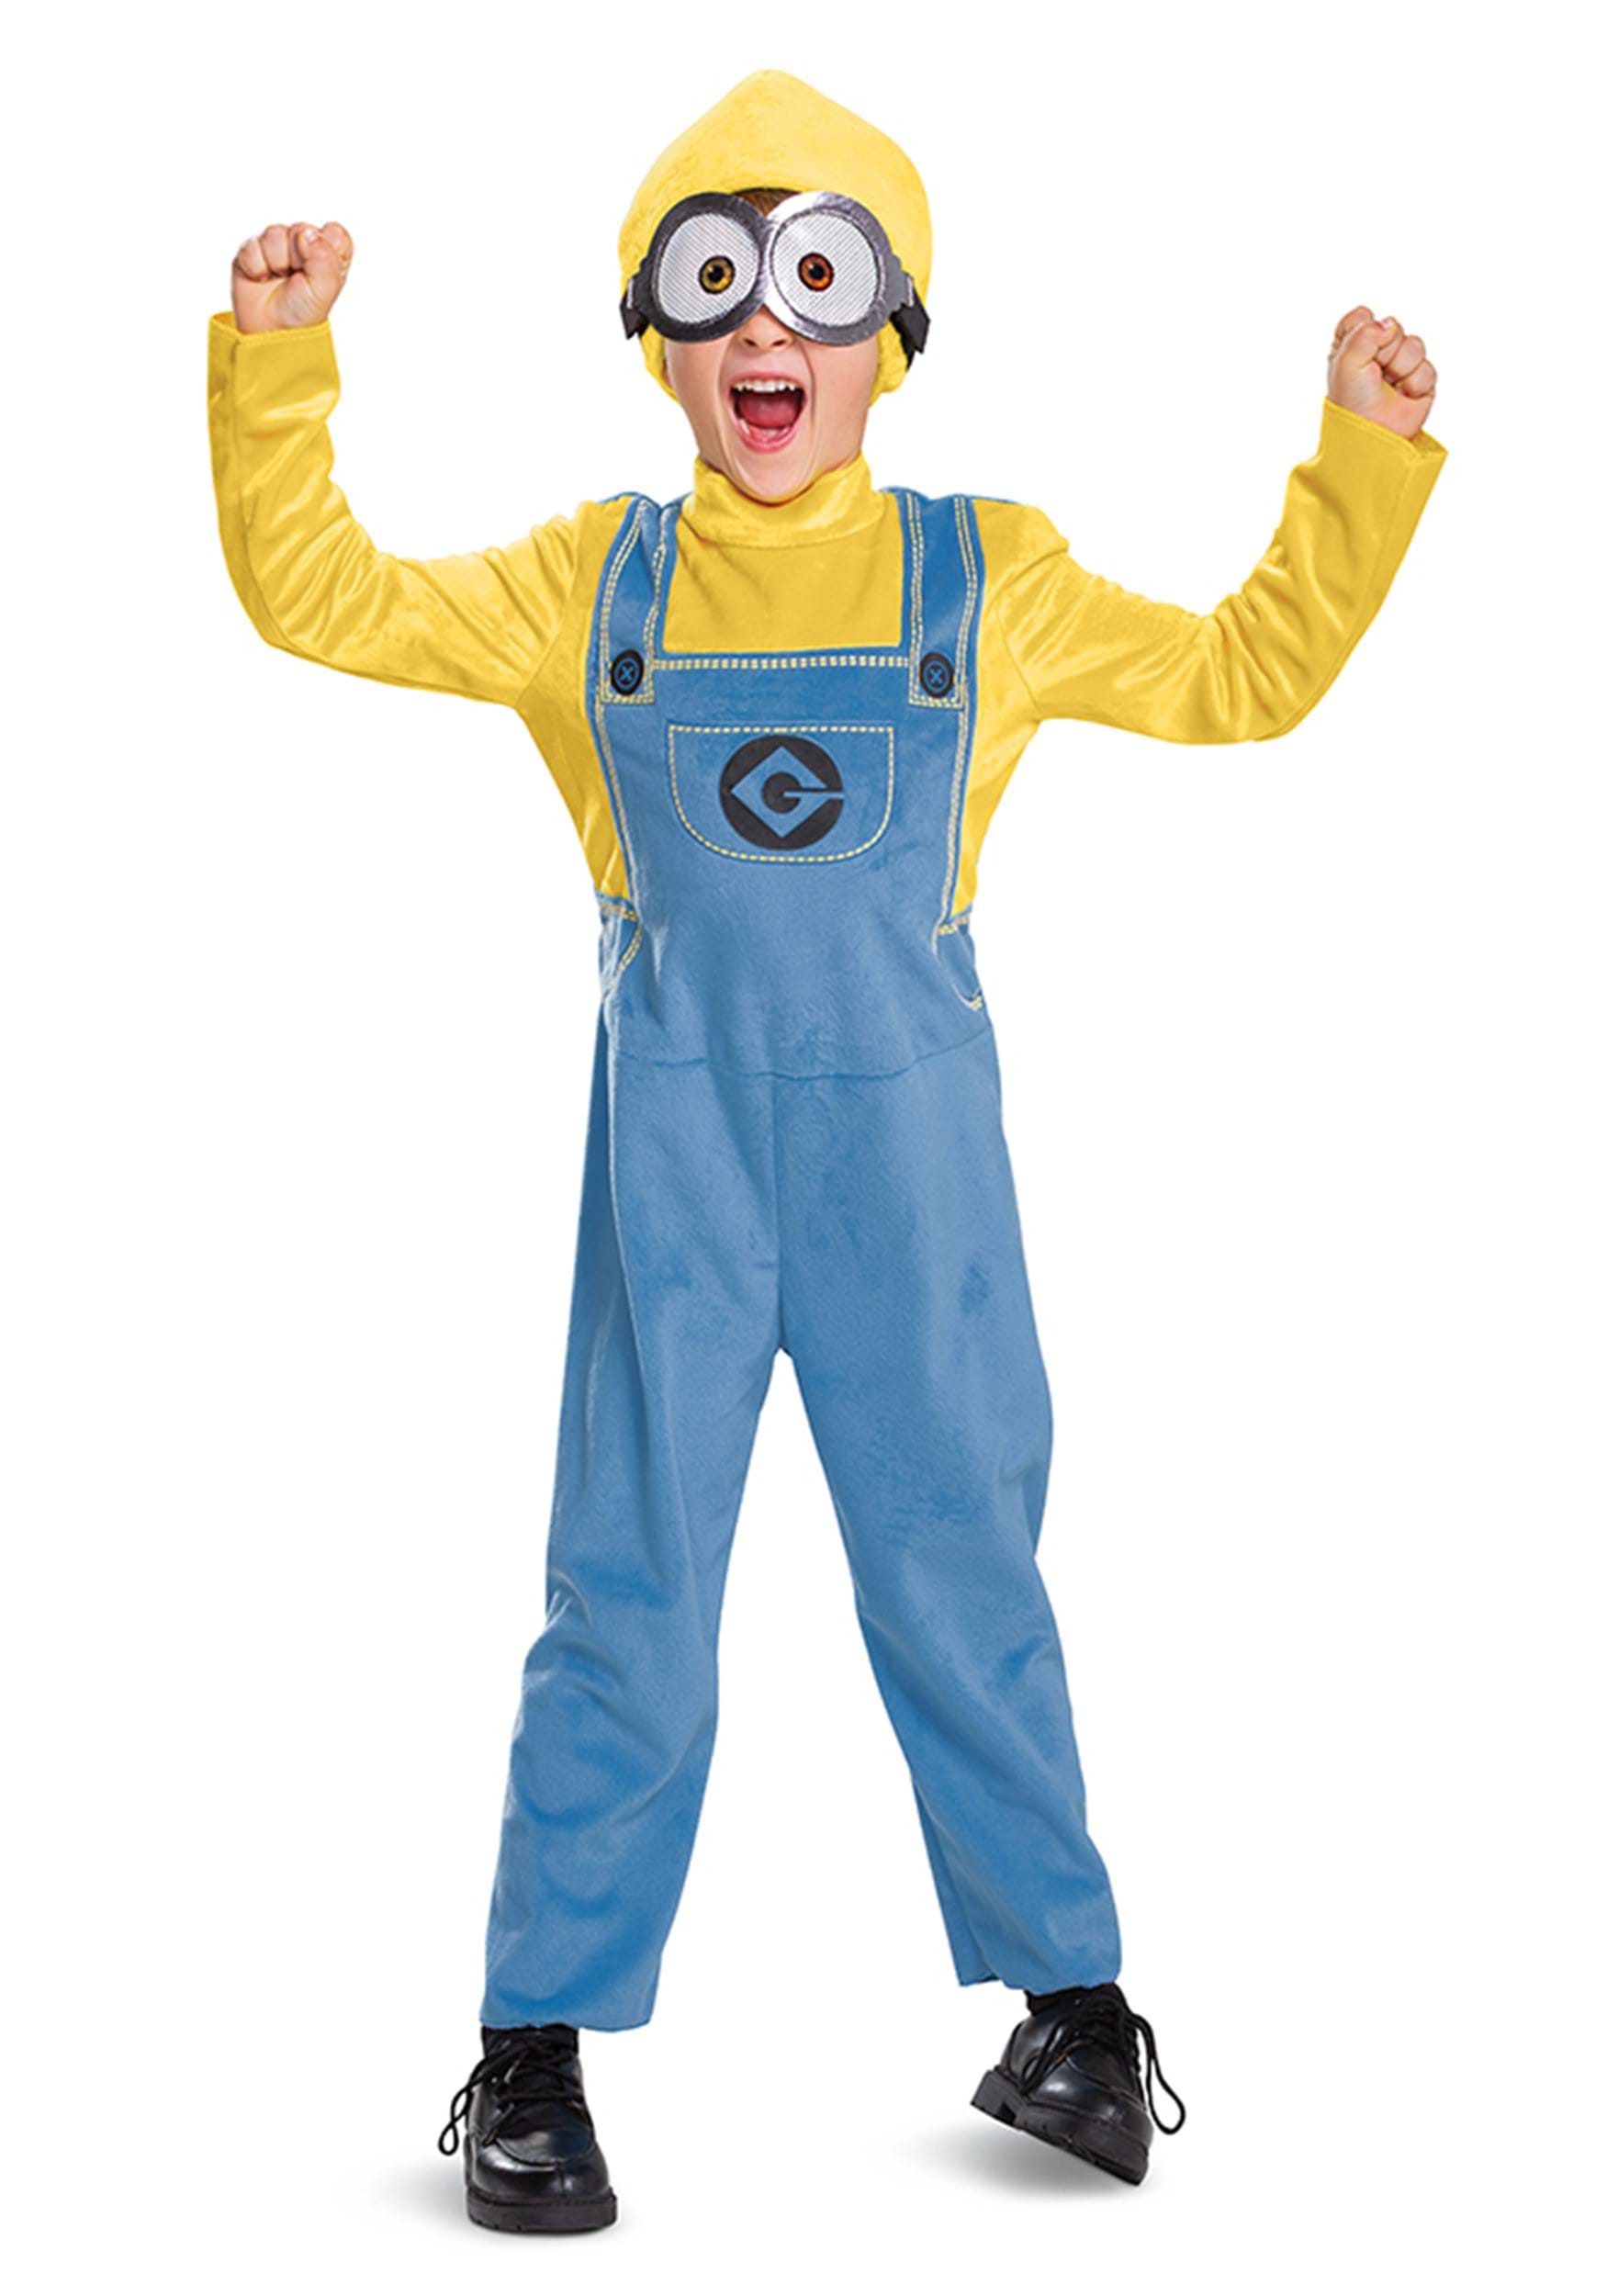 Minion Bob Costume for Children